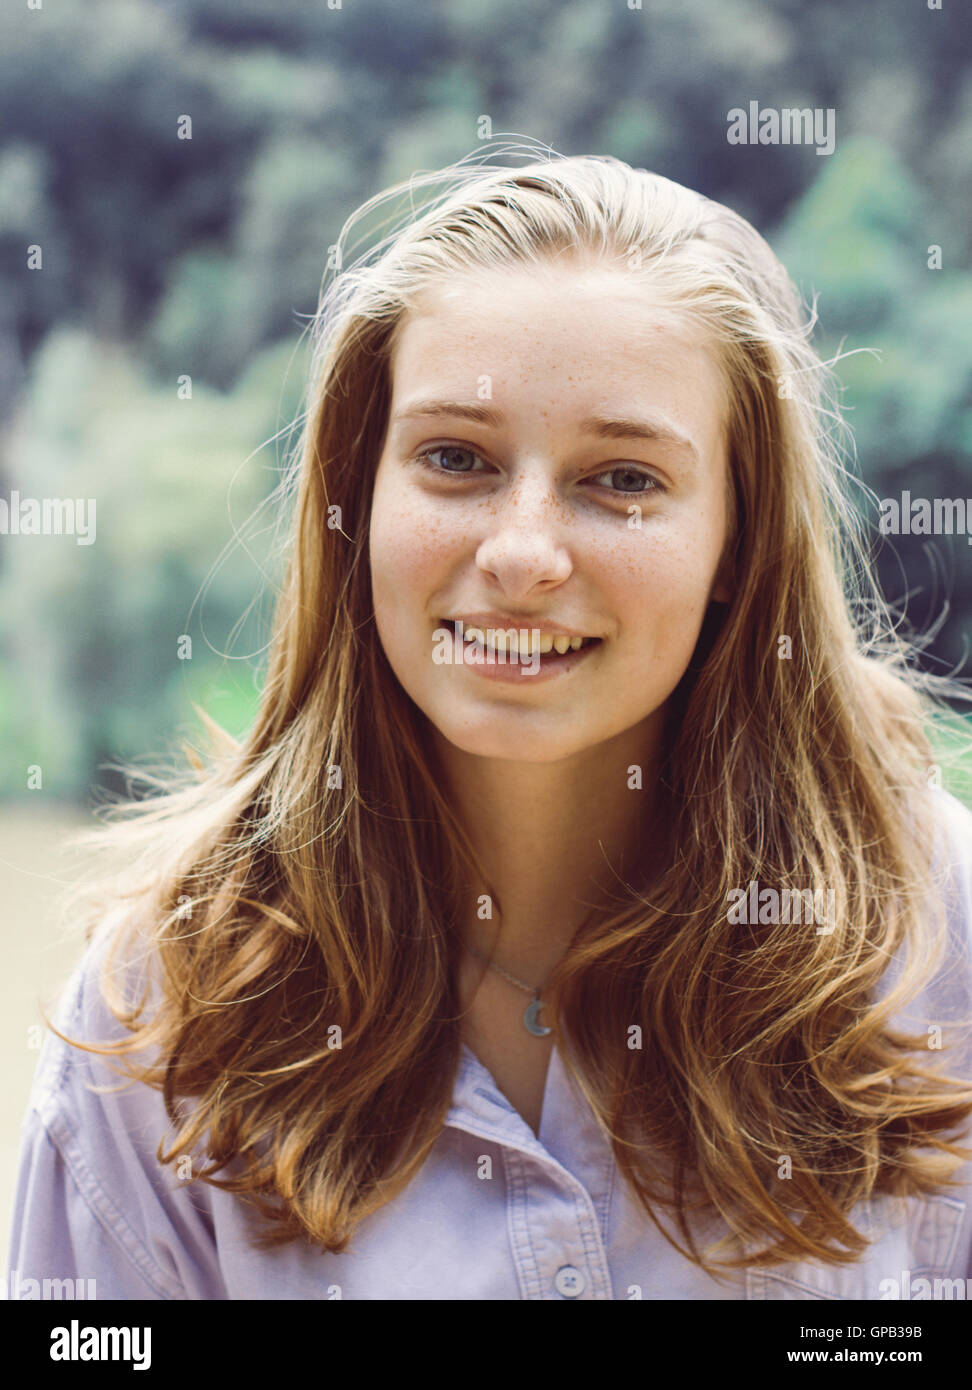 Carino ragazza adolescente ritratto con capelli biondi sorrisi Foto Stock